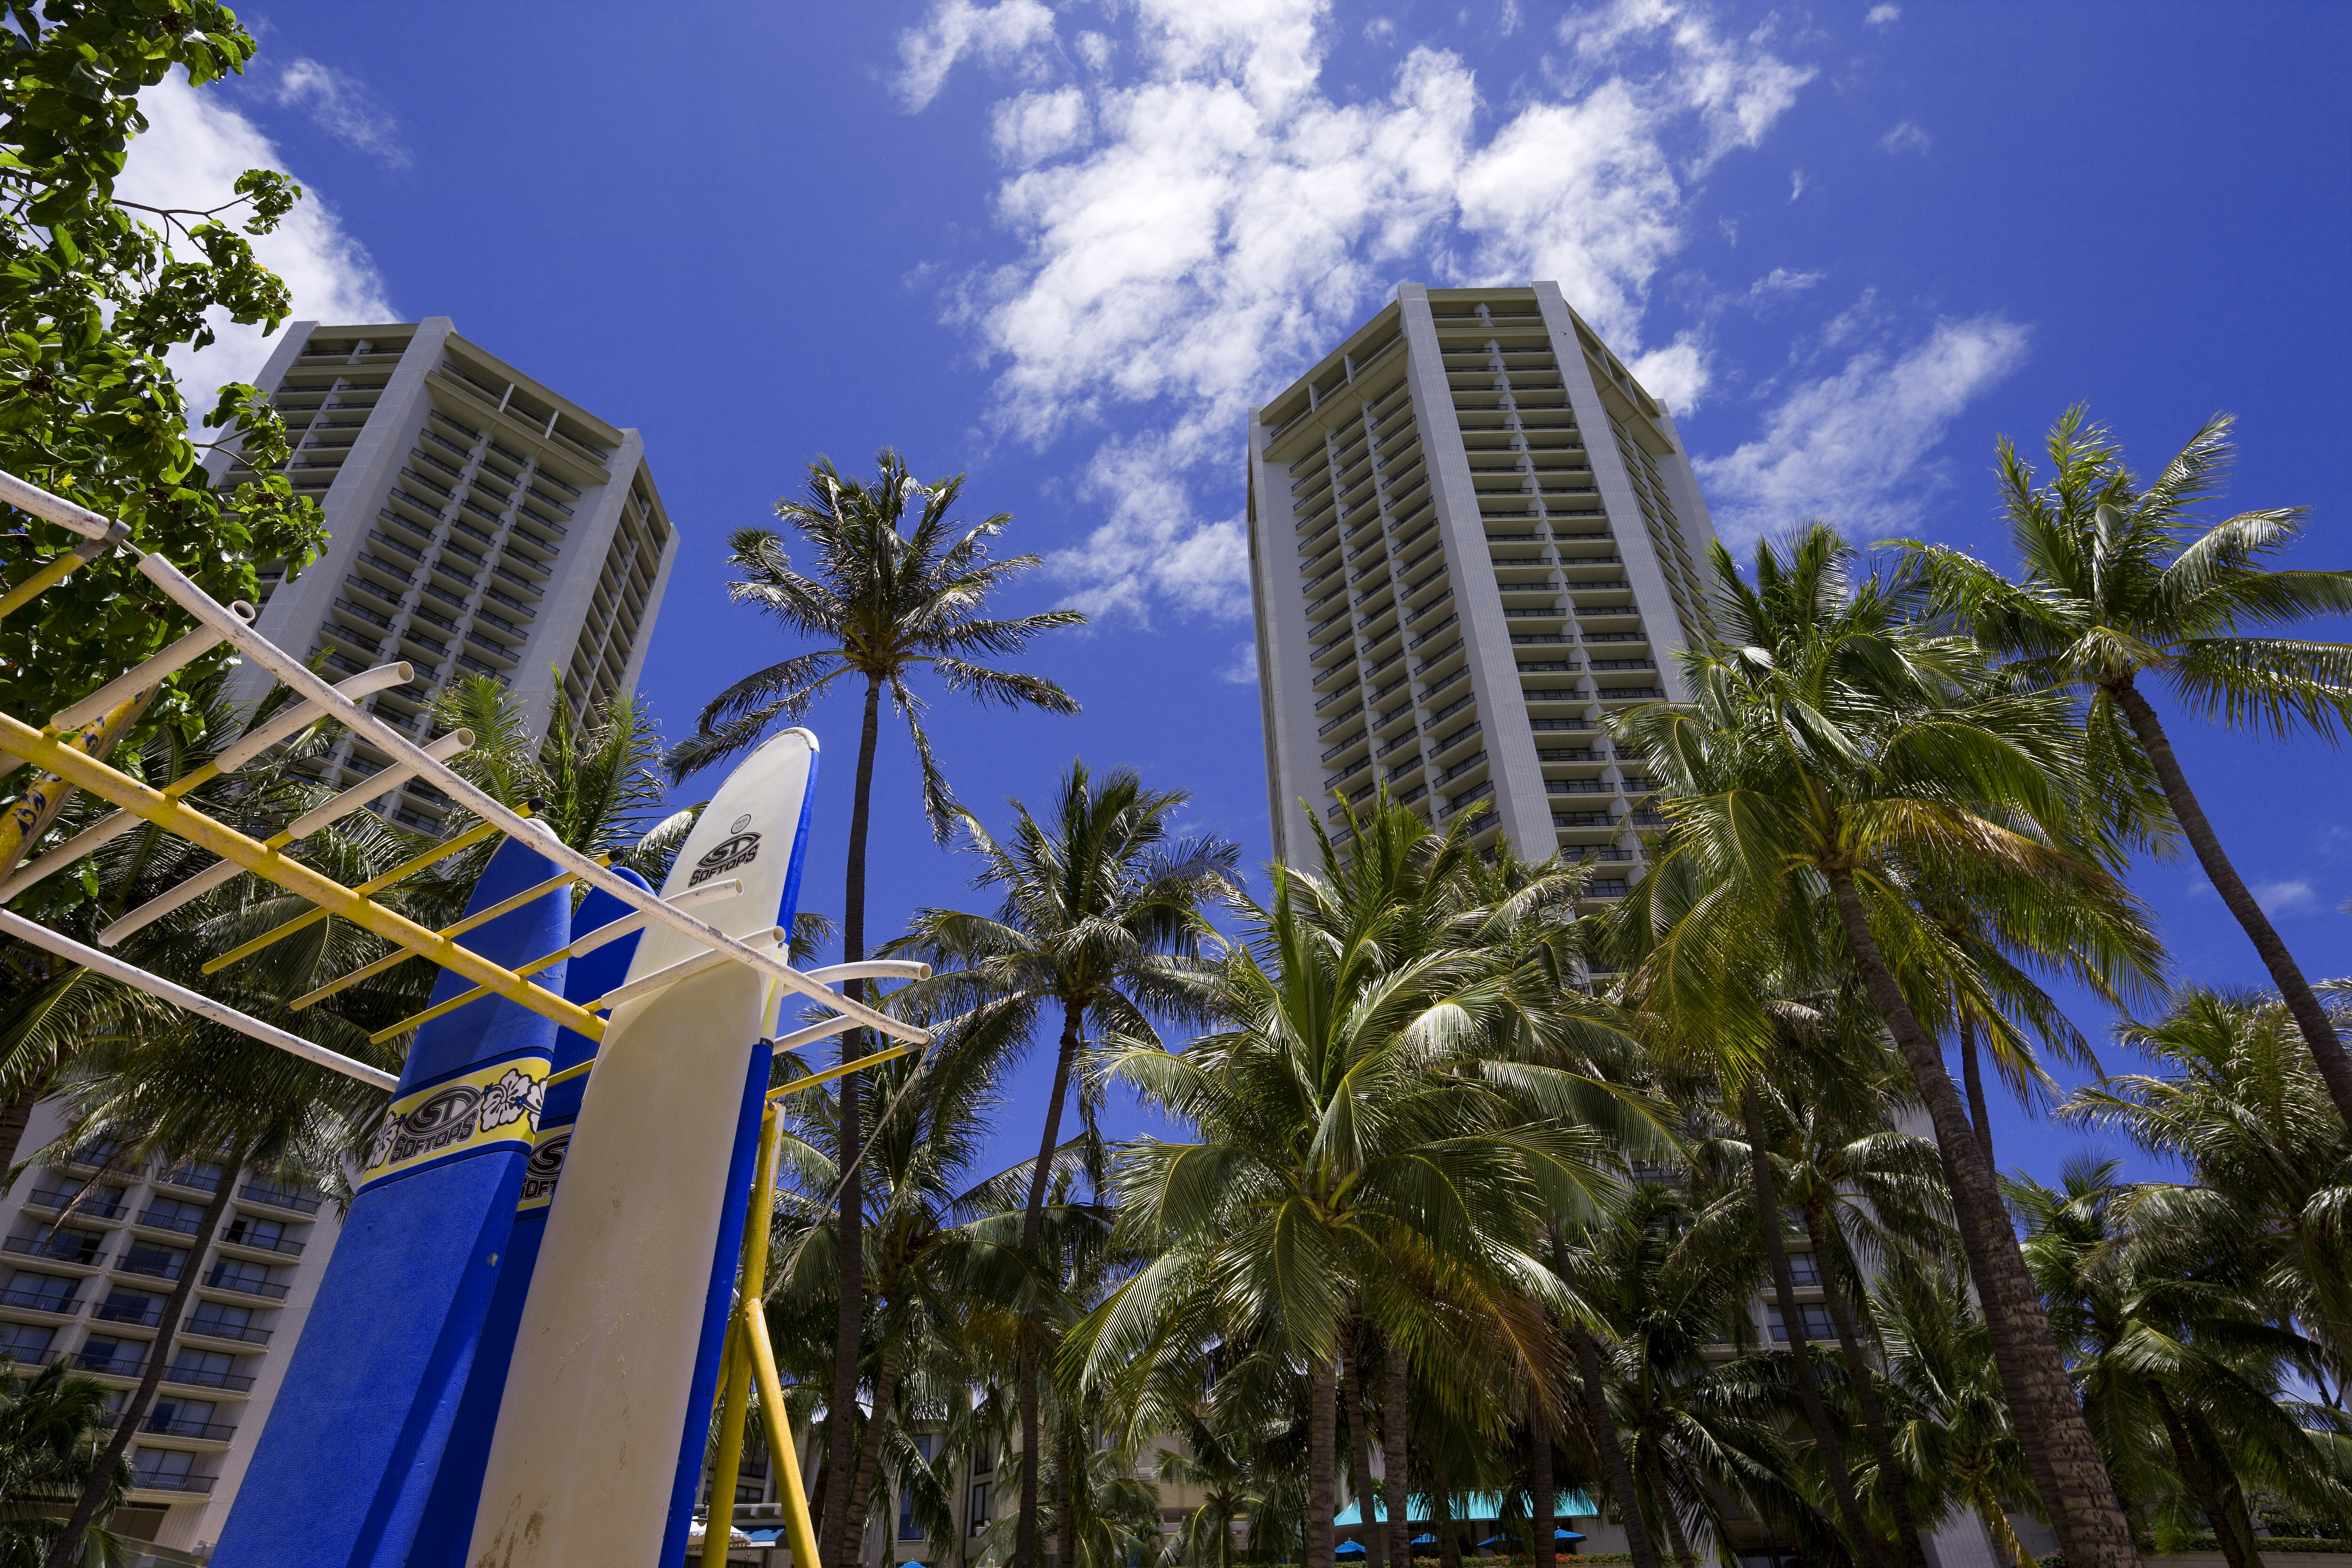 fotografia, materiale, libero il panorama, dipinga, fotografia di scorta,Albergo di Waikiki, spiaggia, surfboad, cielo blu, costruendo